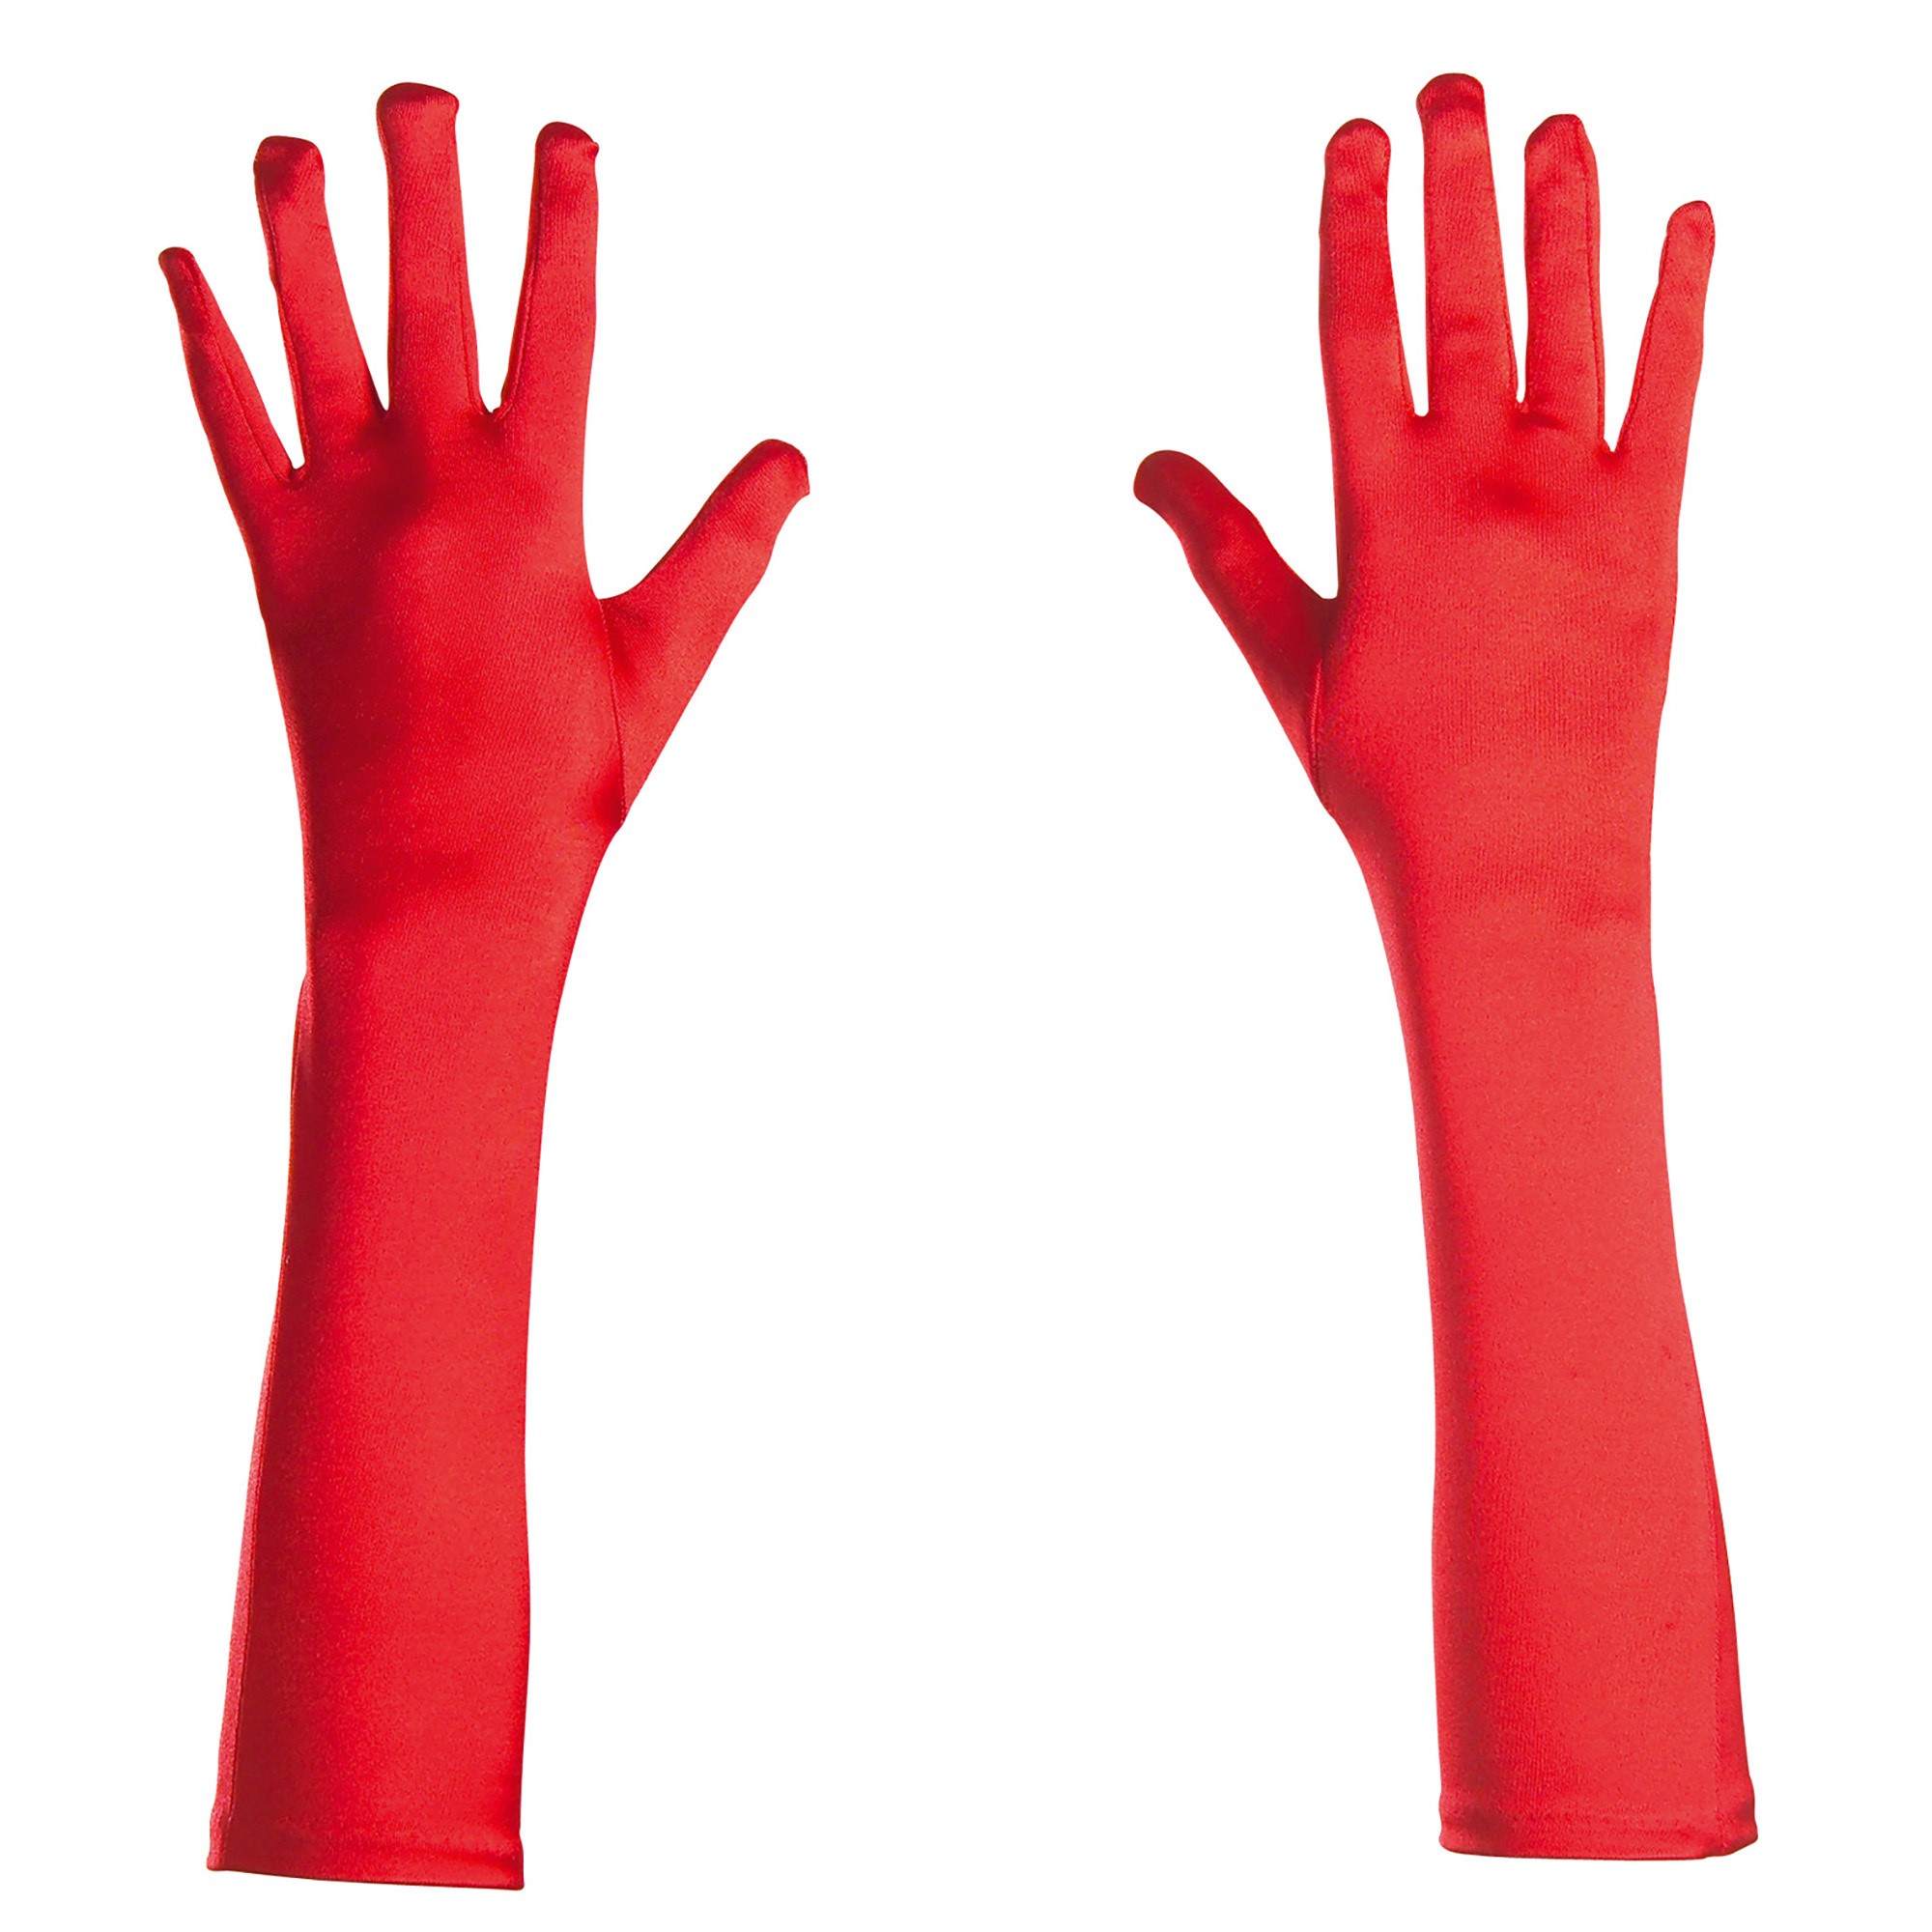 Handschoenen Spandex rood 43cm lang